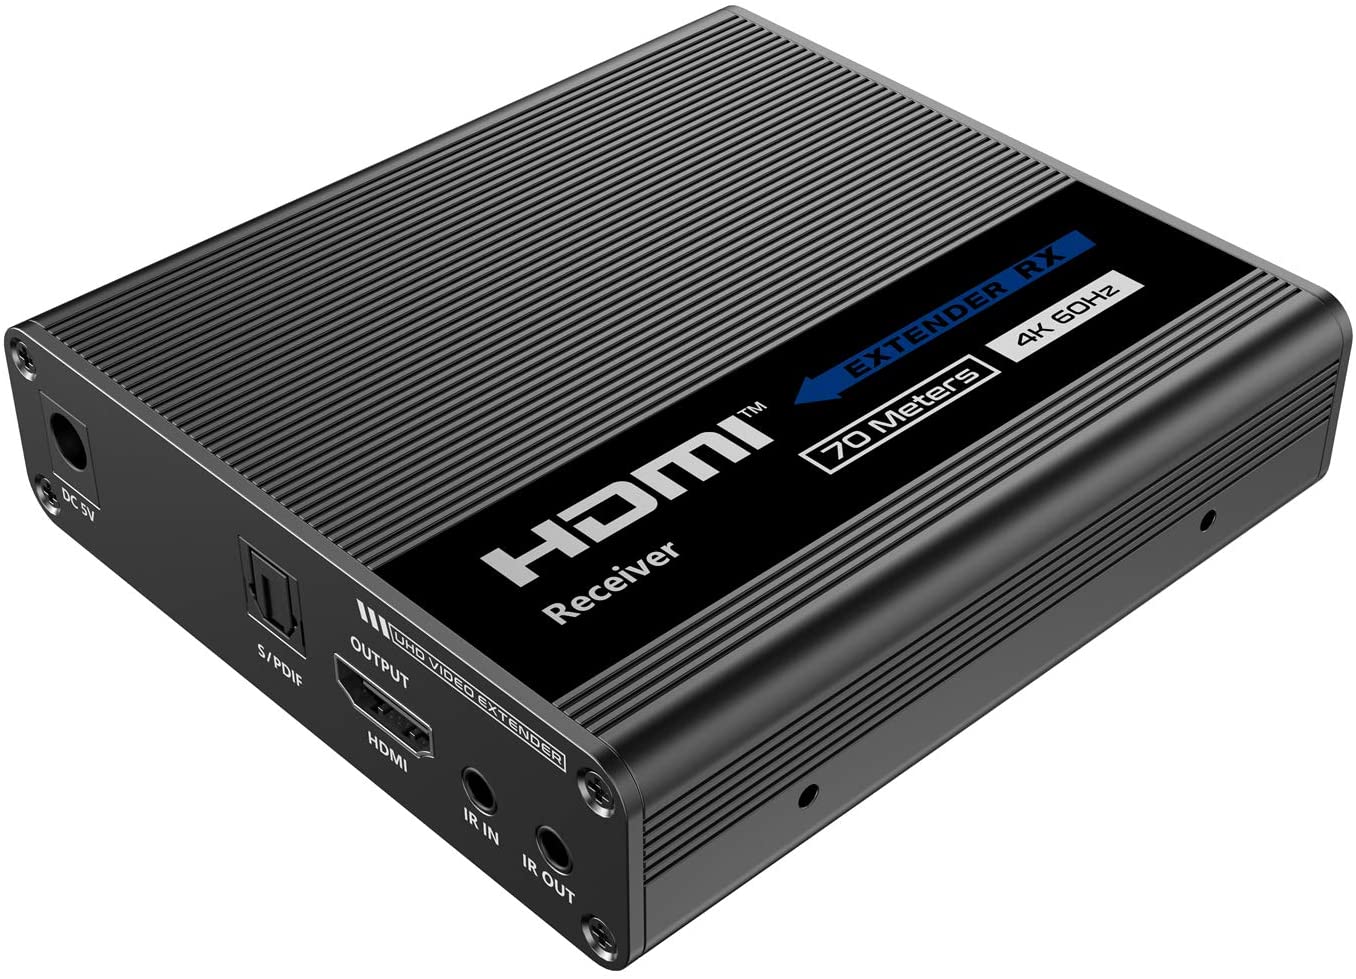 1x4 4K HDMI Extender Splitter - 4K@60Hz/164ft, 4K@30Hz/196ft